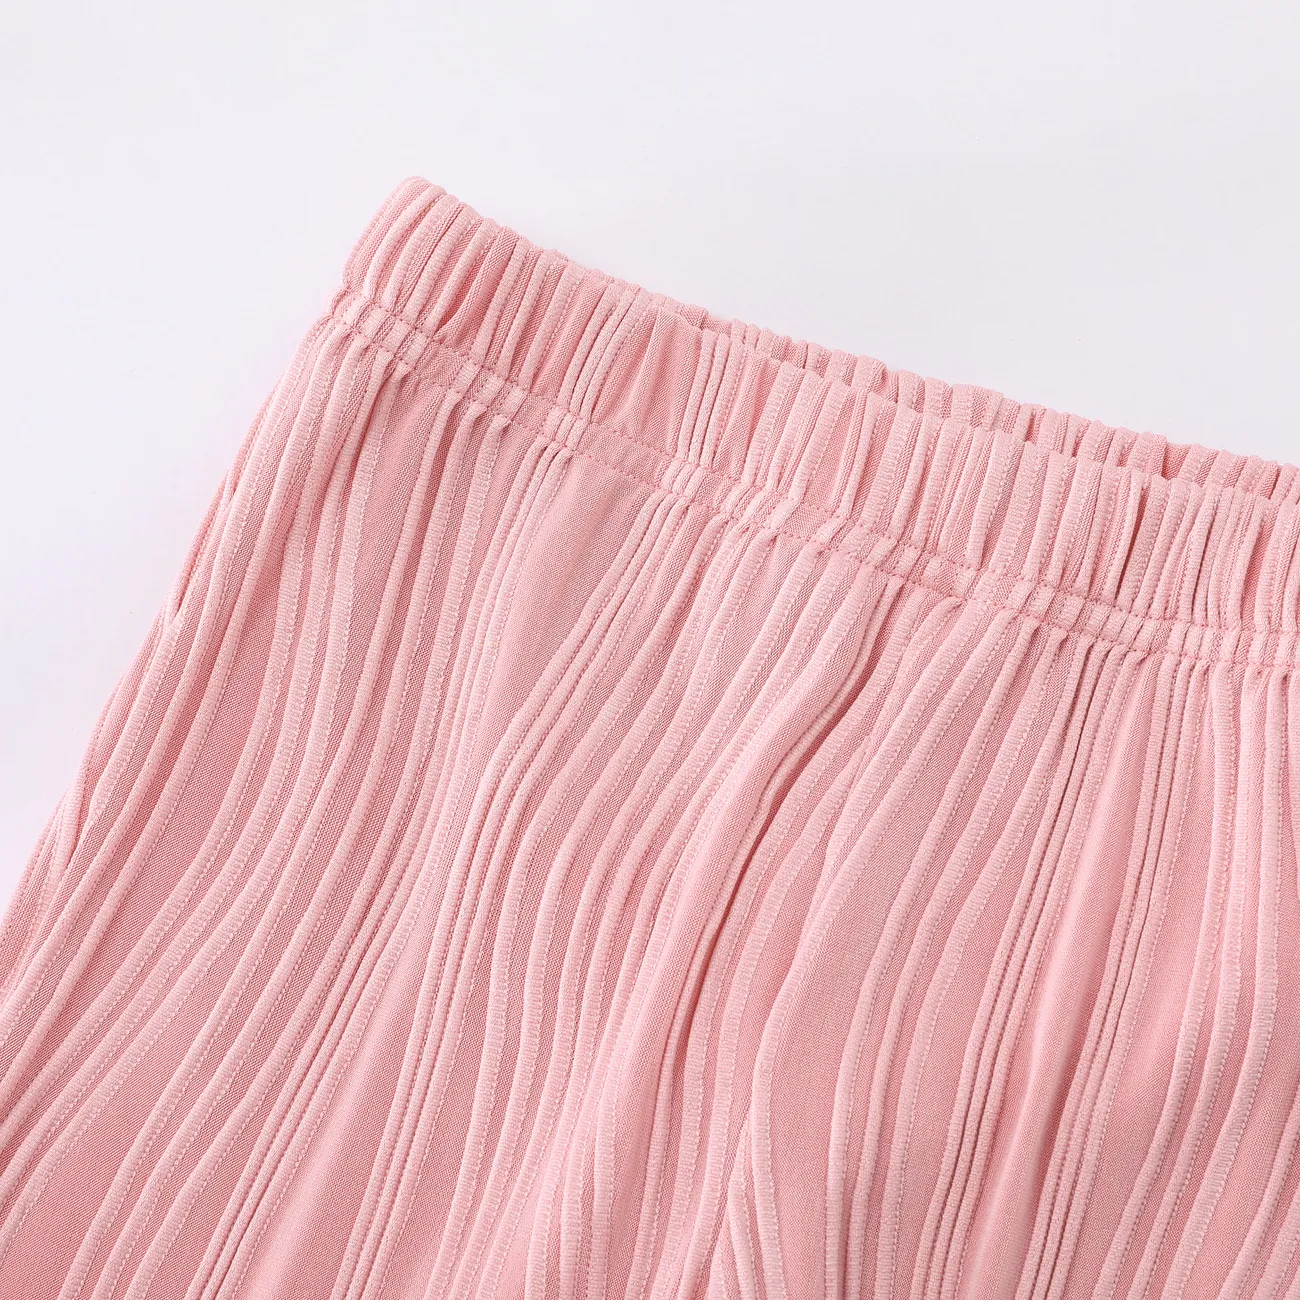 Pantaloni per l'aria condizionata Cool Wave della bambina Rosa big image 1